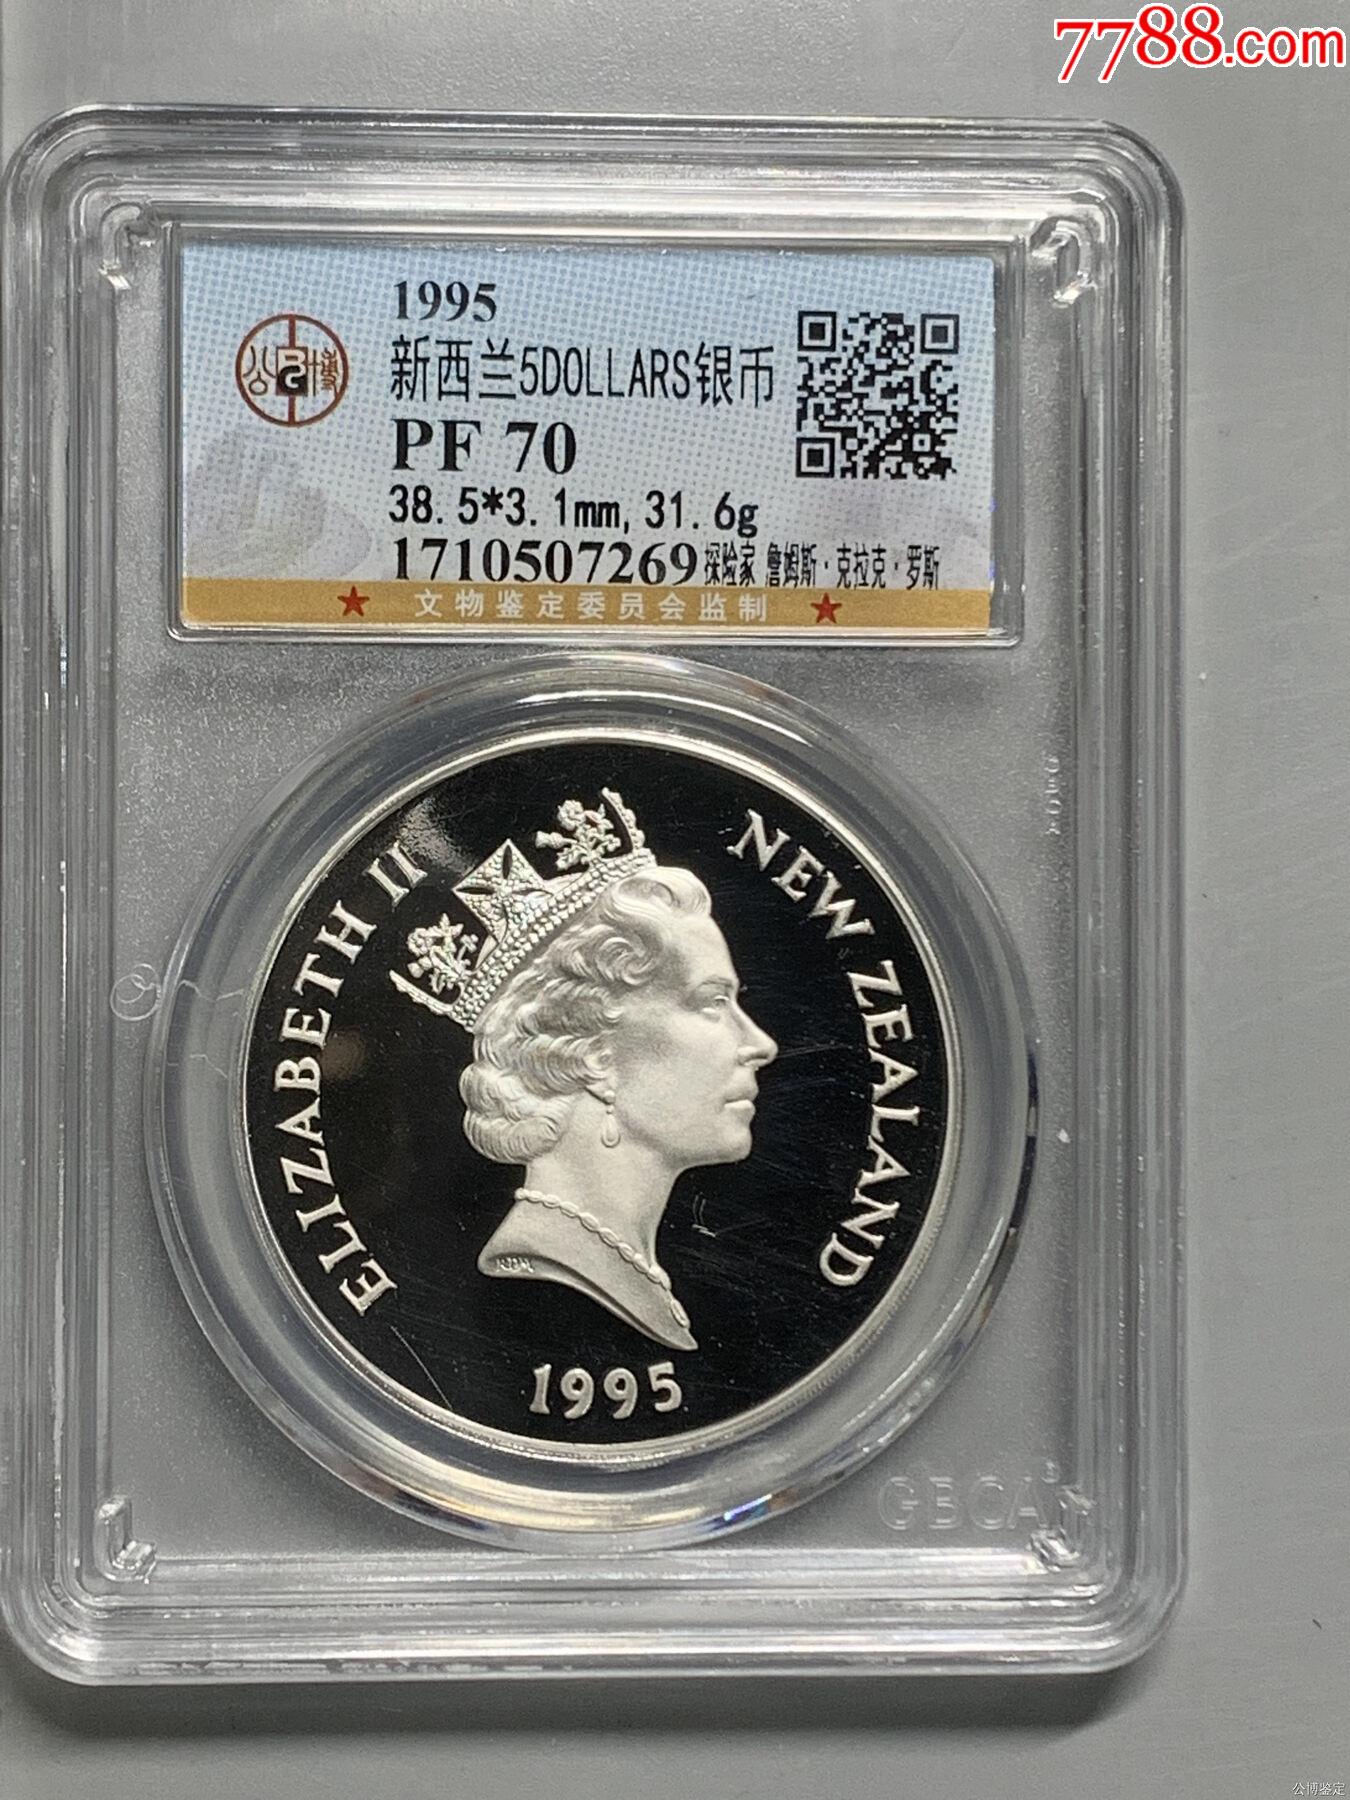 新西兰硬币1983年20美分 — “猕猴” 库存图片. 图片 包括有 货币, 财务, 双翼飞机, 新建 - 174786023